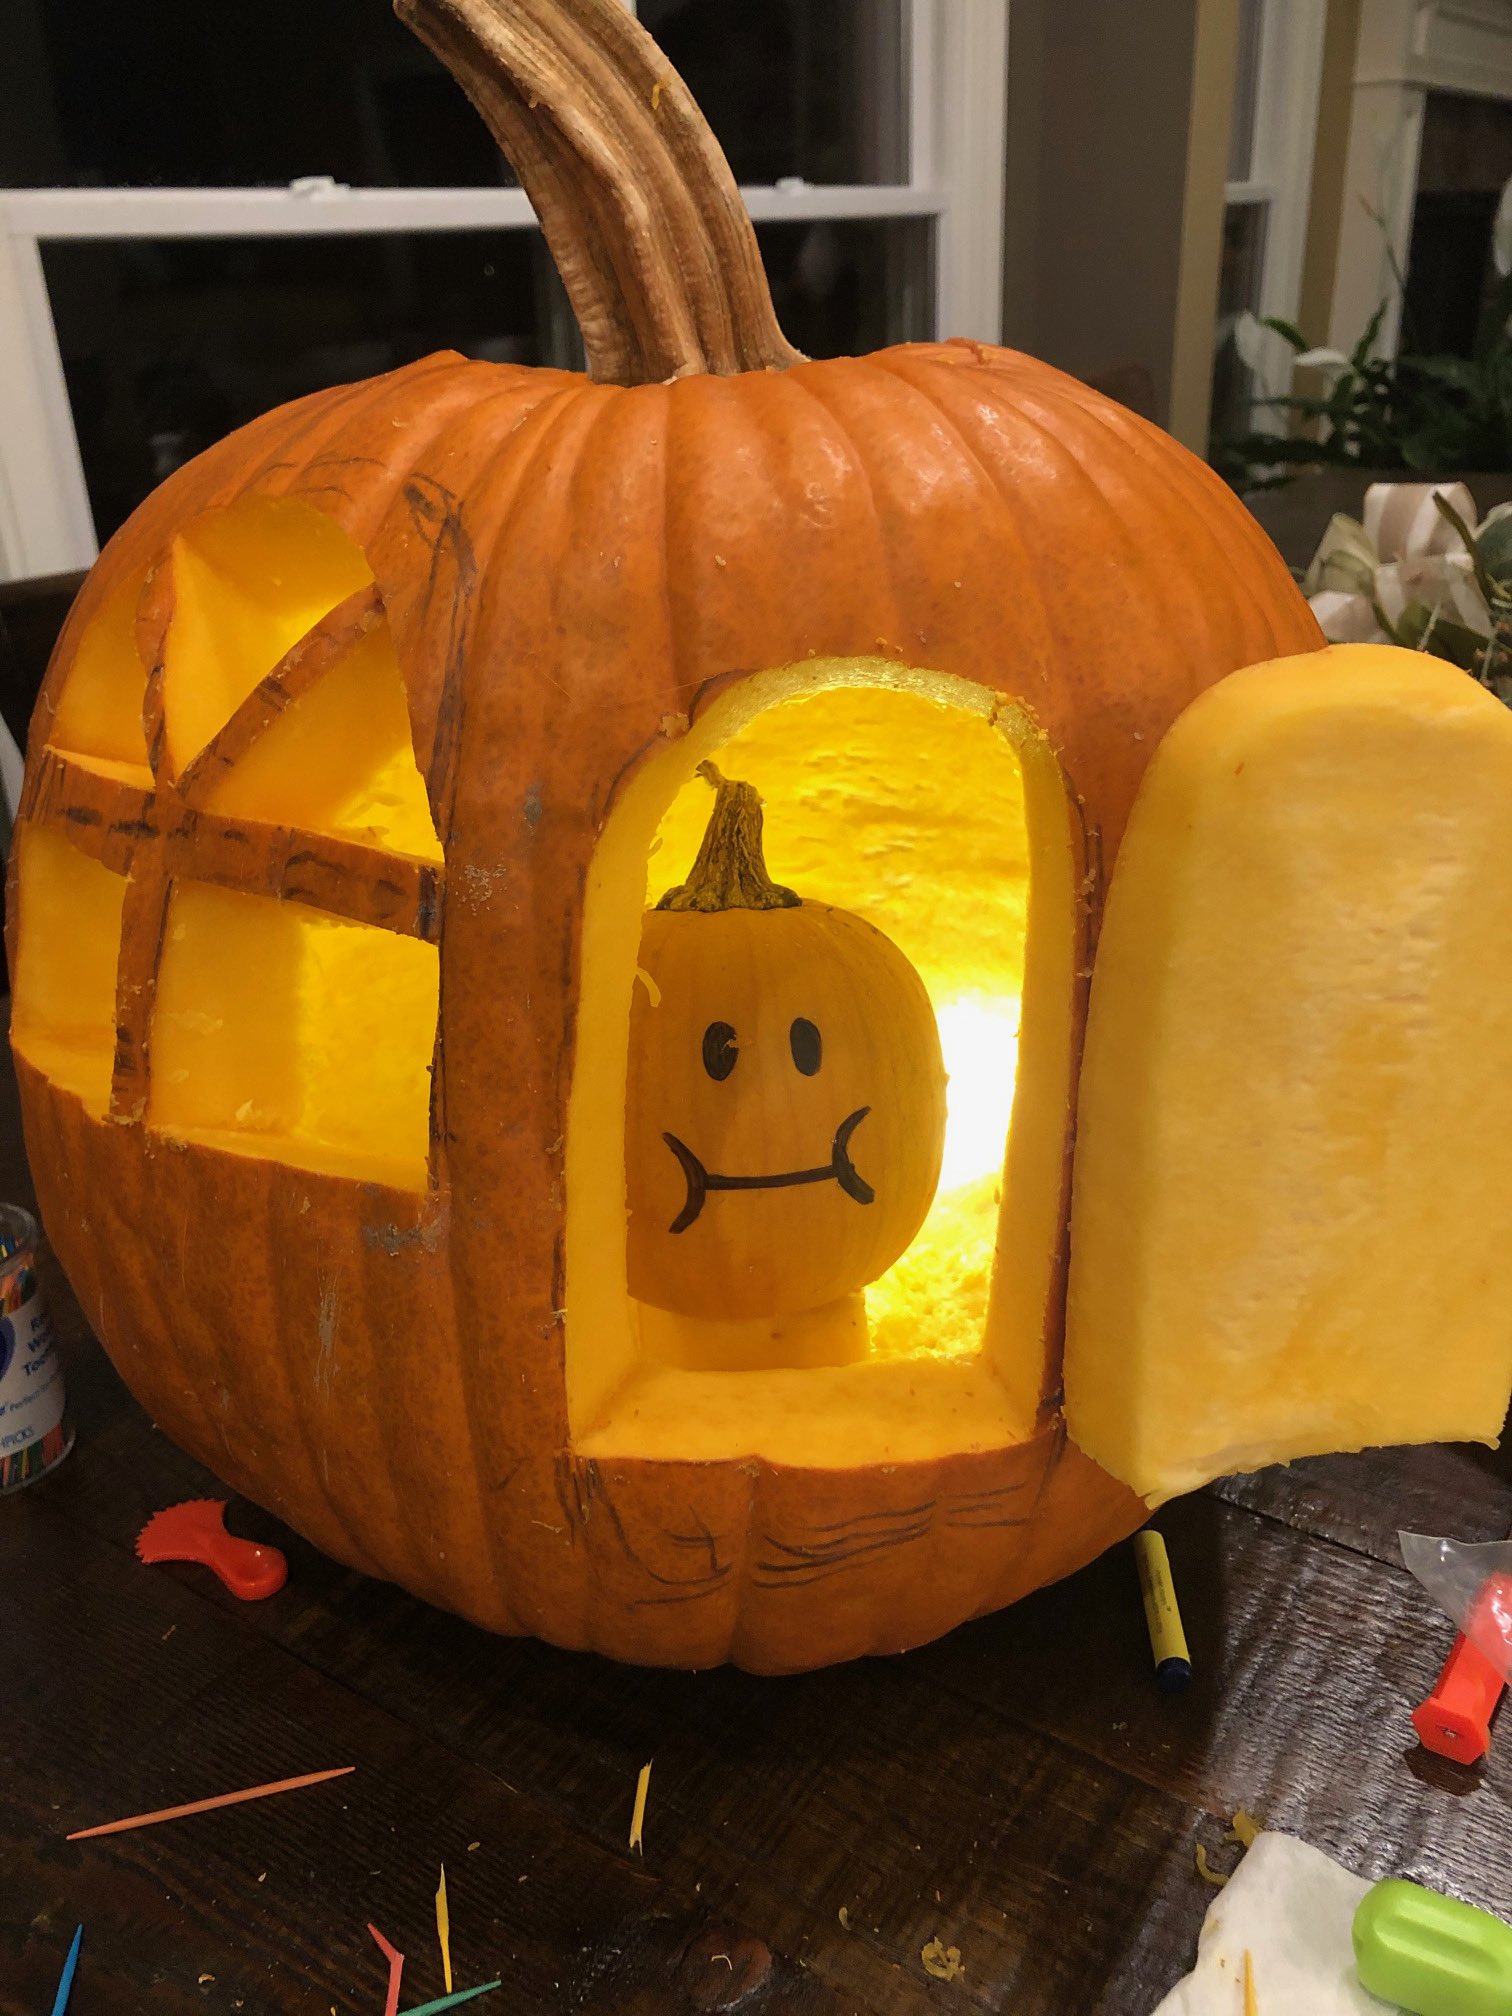 A pumpkin living inside another pumpkin